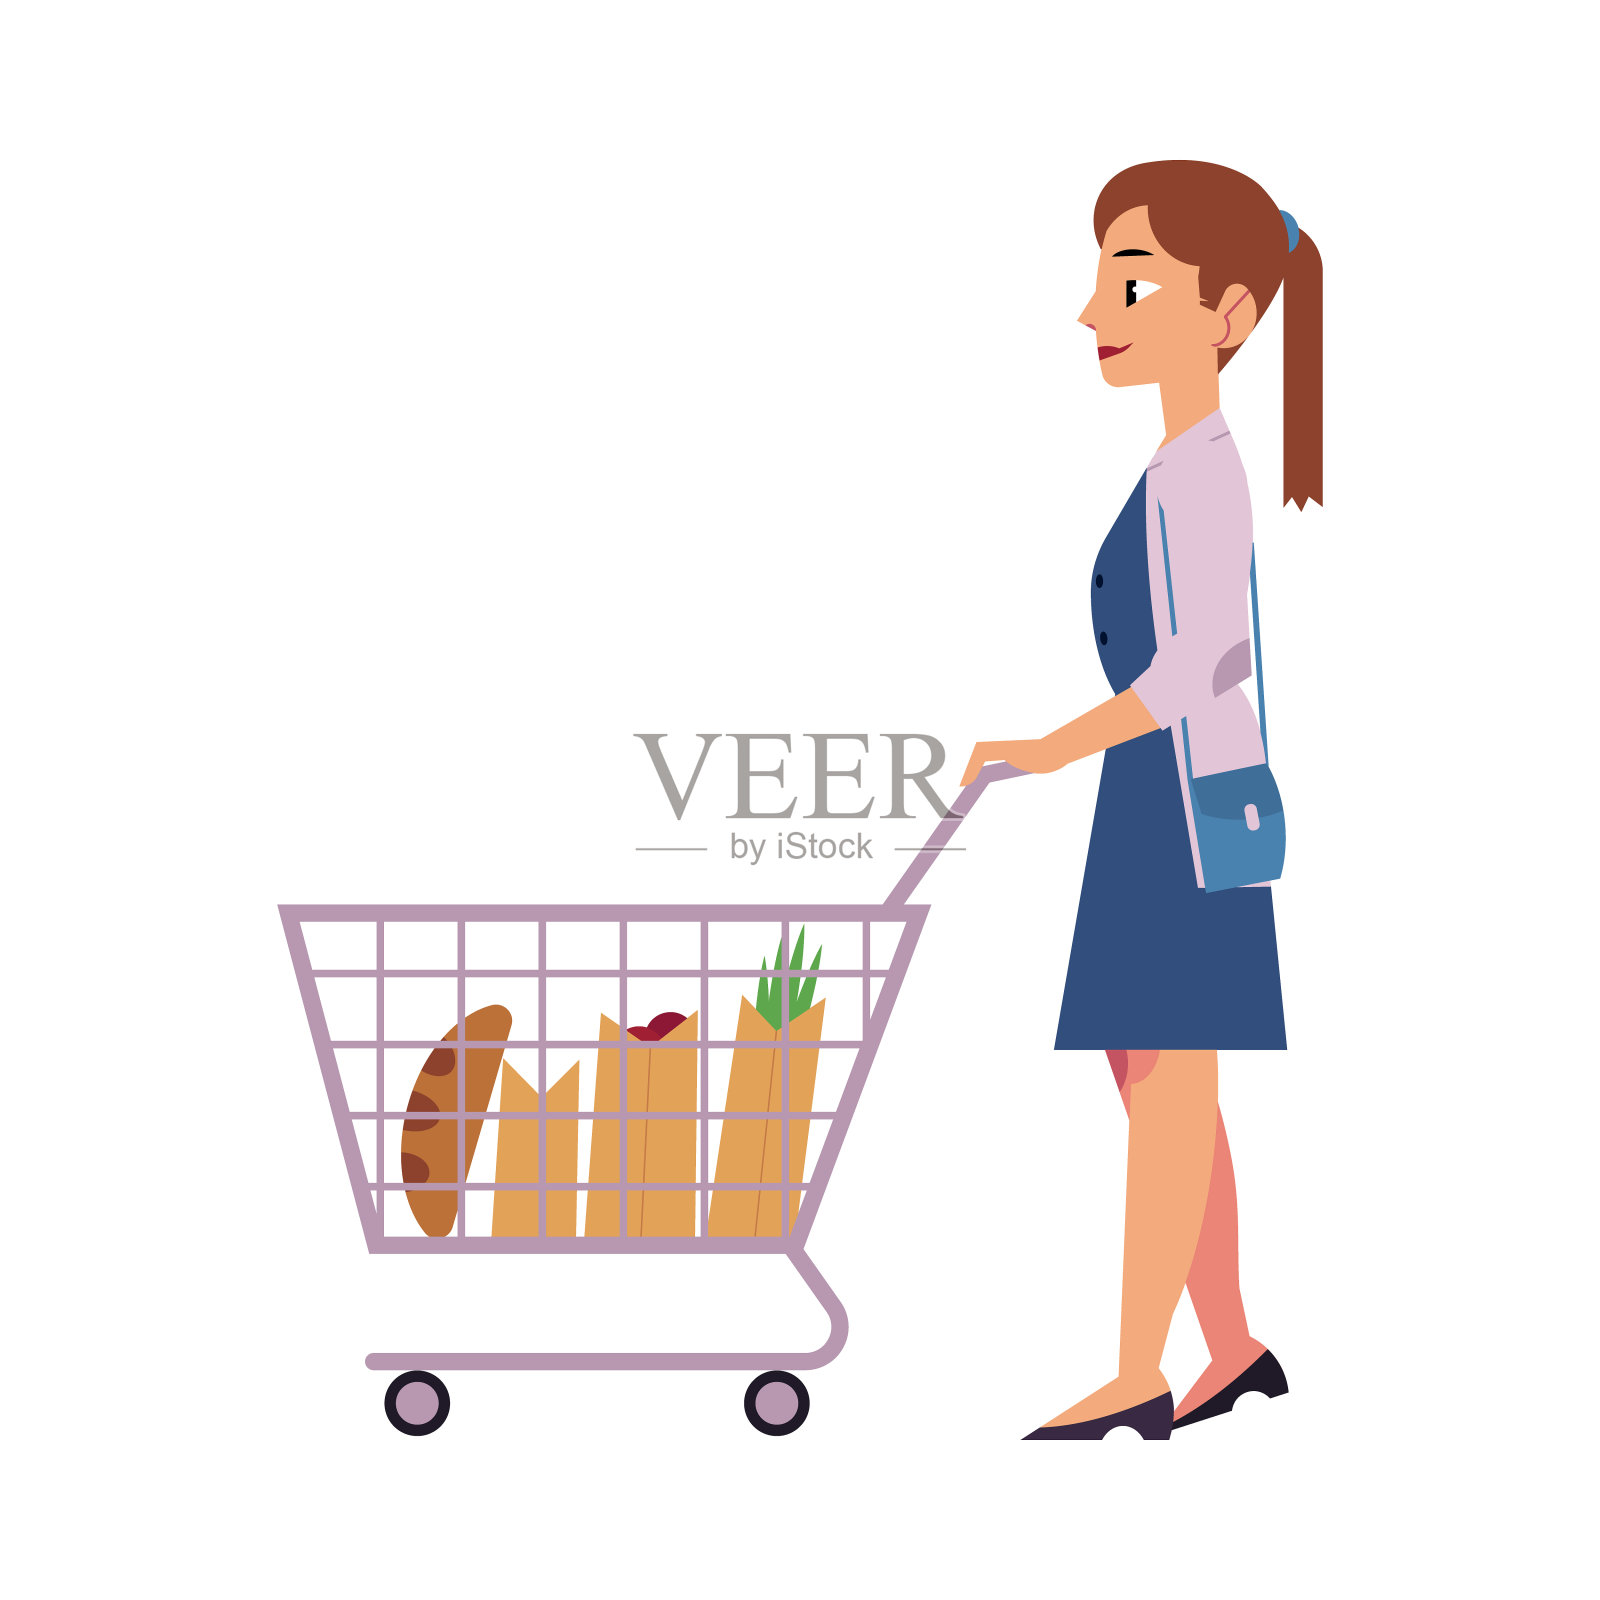 年轻的女孩用手推着购物车在超市存放食物。插画图片素材